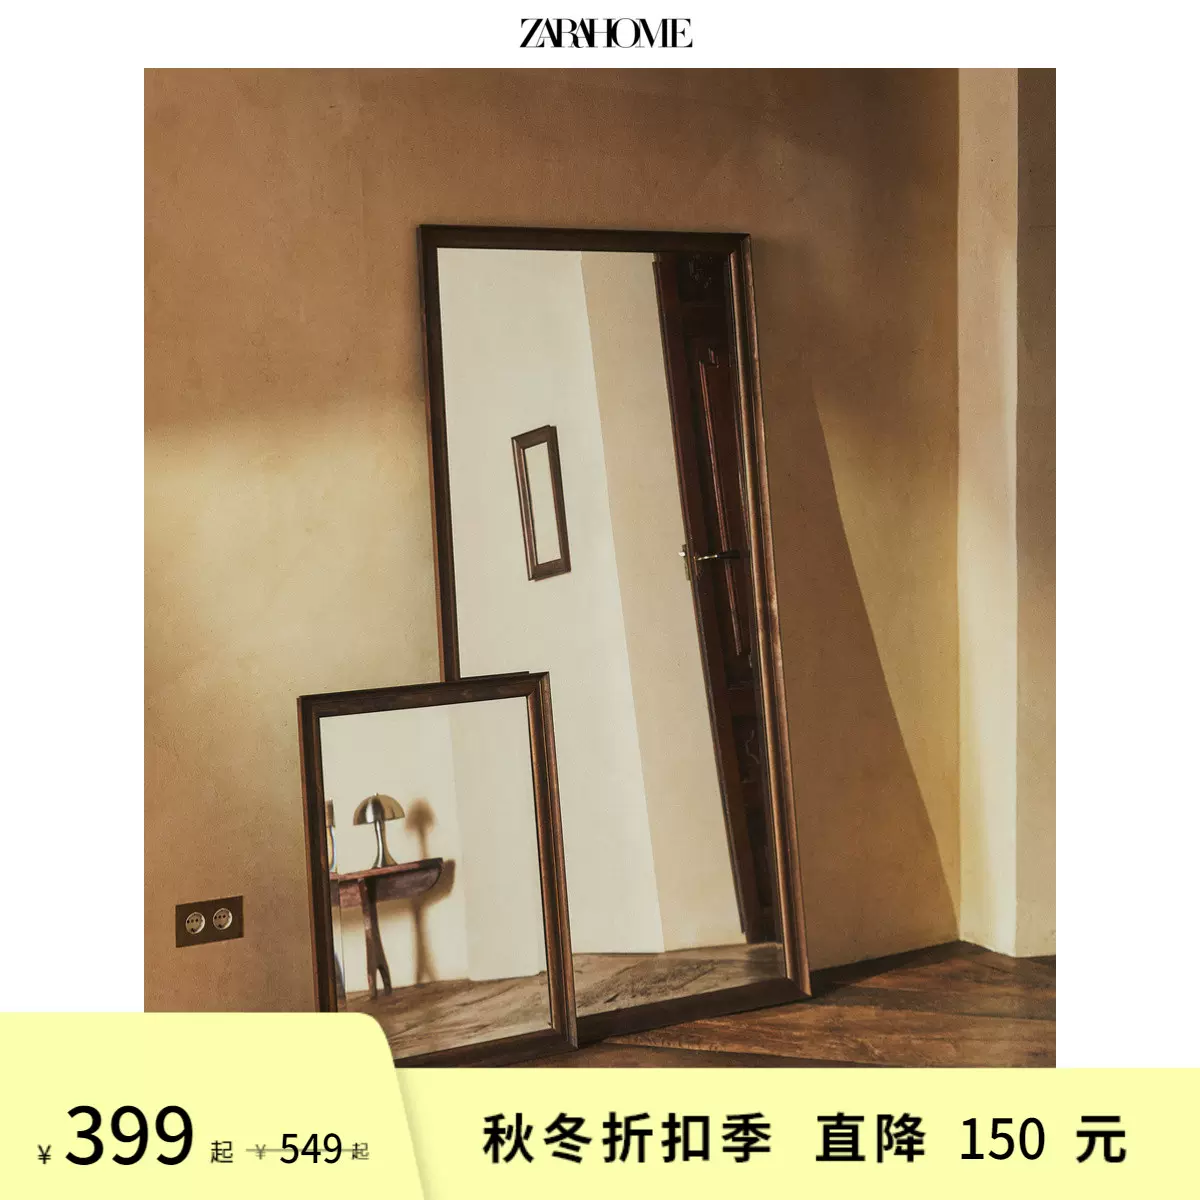 Zara Home欧式简约现代风刻面木制外框镜子卧室全身镜41362106700